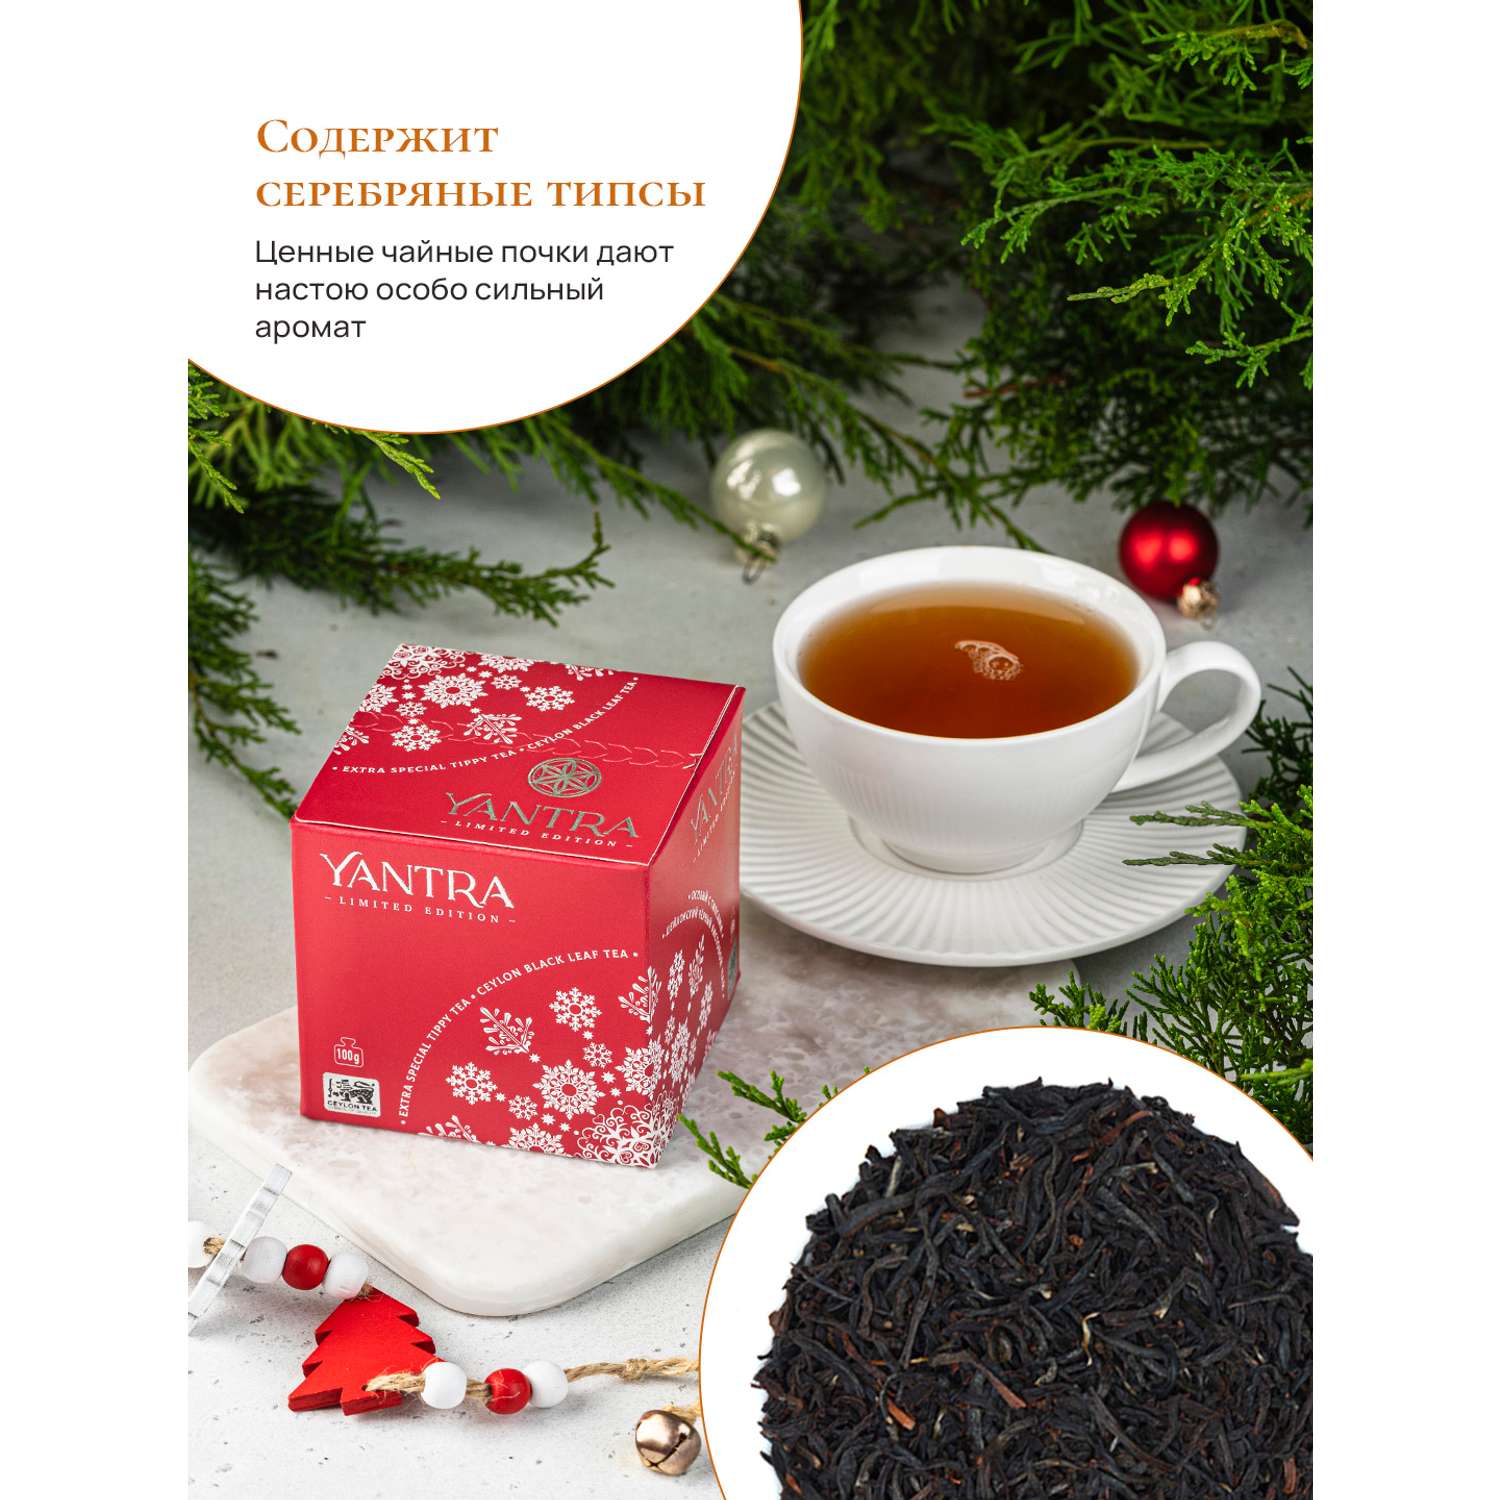 Чай Limited Edition Yantra чёрный лист с типсами стандарт Extra Special Tippy Tea 100 г - фото 3